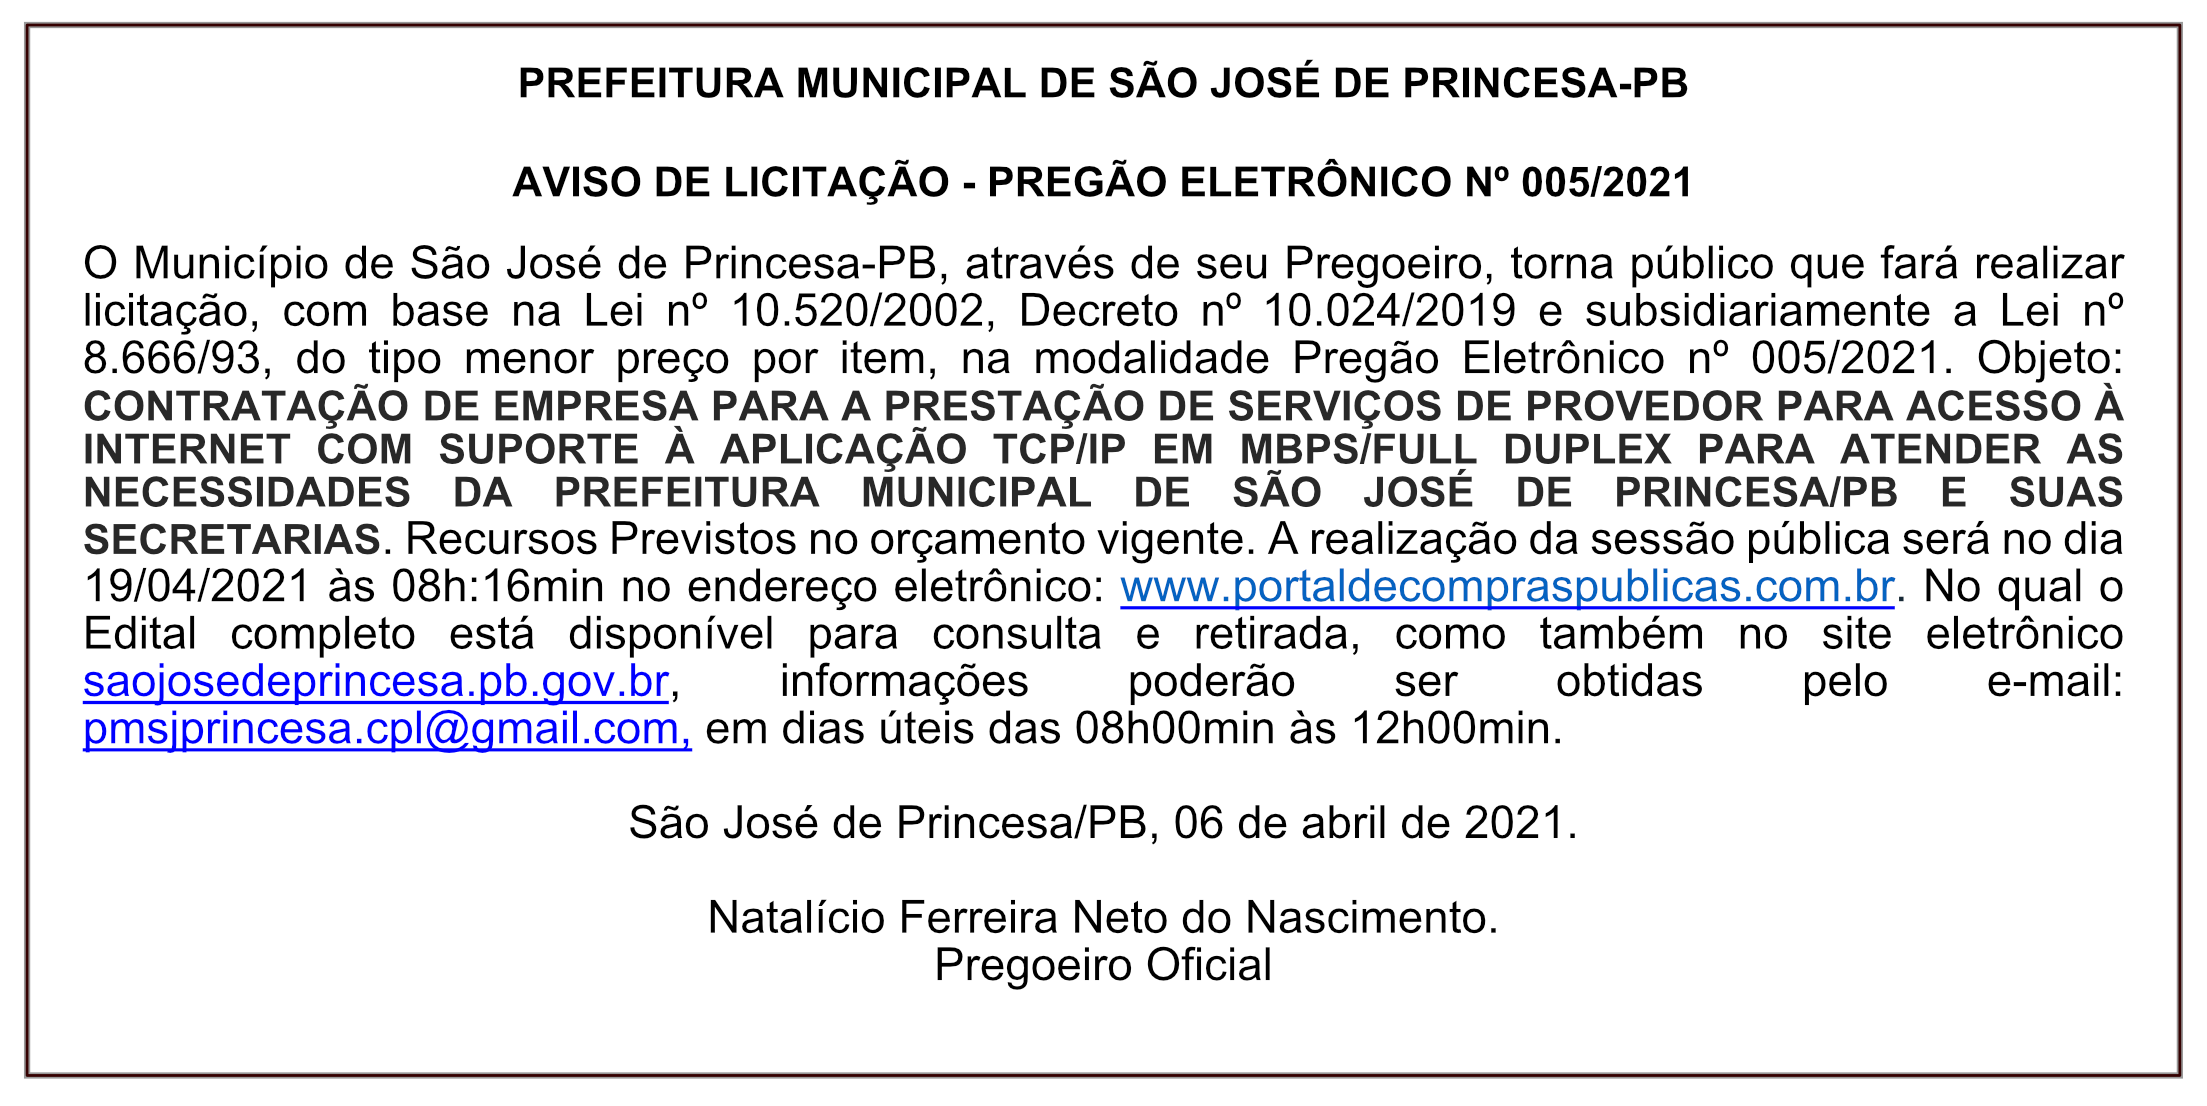 PREFEITURA MUNICIPAL DE SÃO JOSÉ DE PRINCESA – AVISO DE LICITAÇÃO – PREGÃO ELETRÔNICO Nº 005/2021